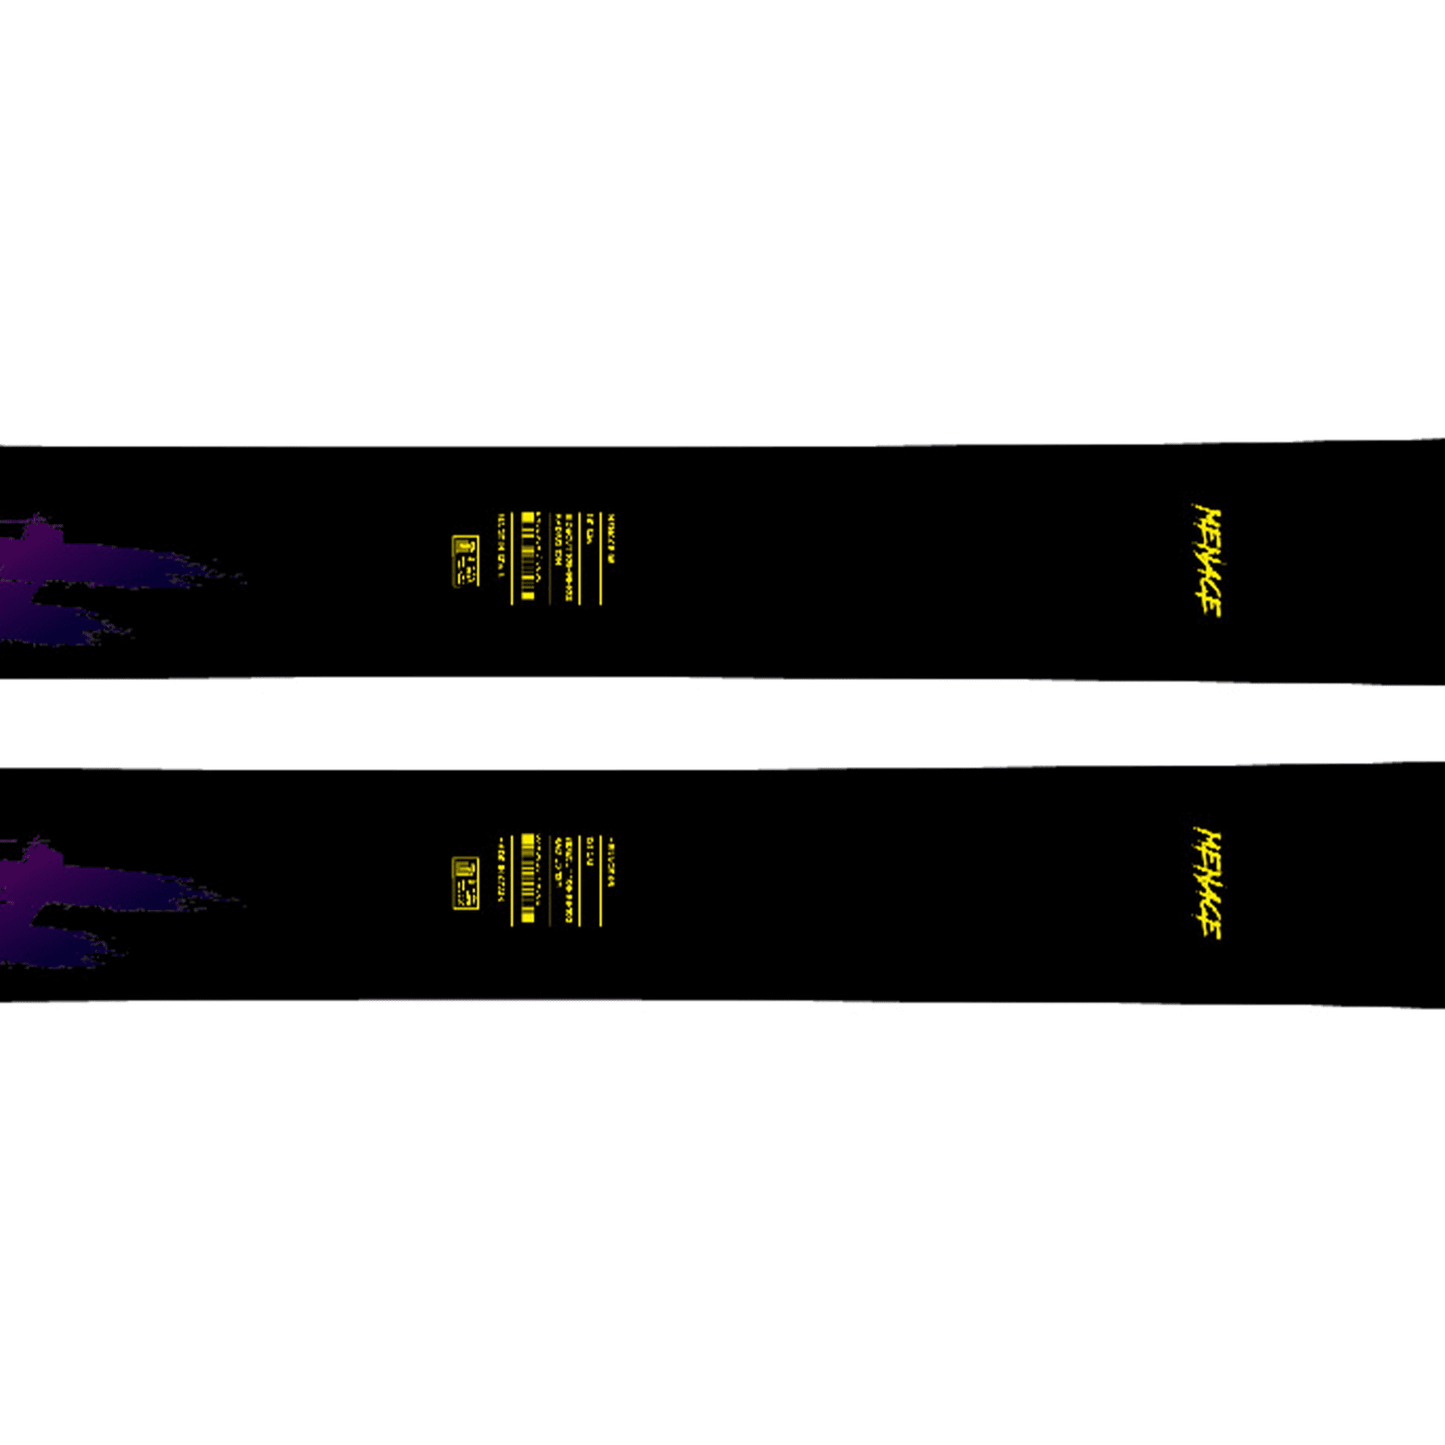 Dynastar Menace 98 Ski's (2021)